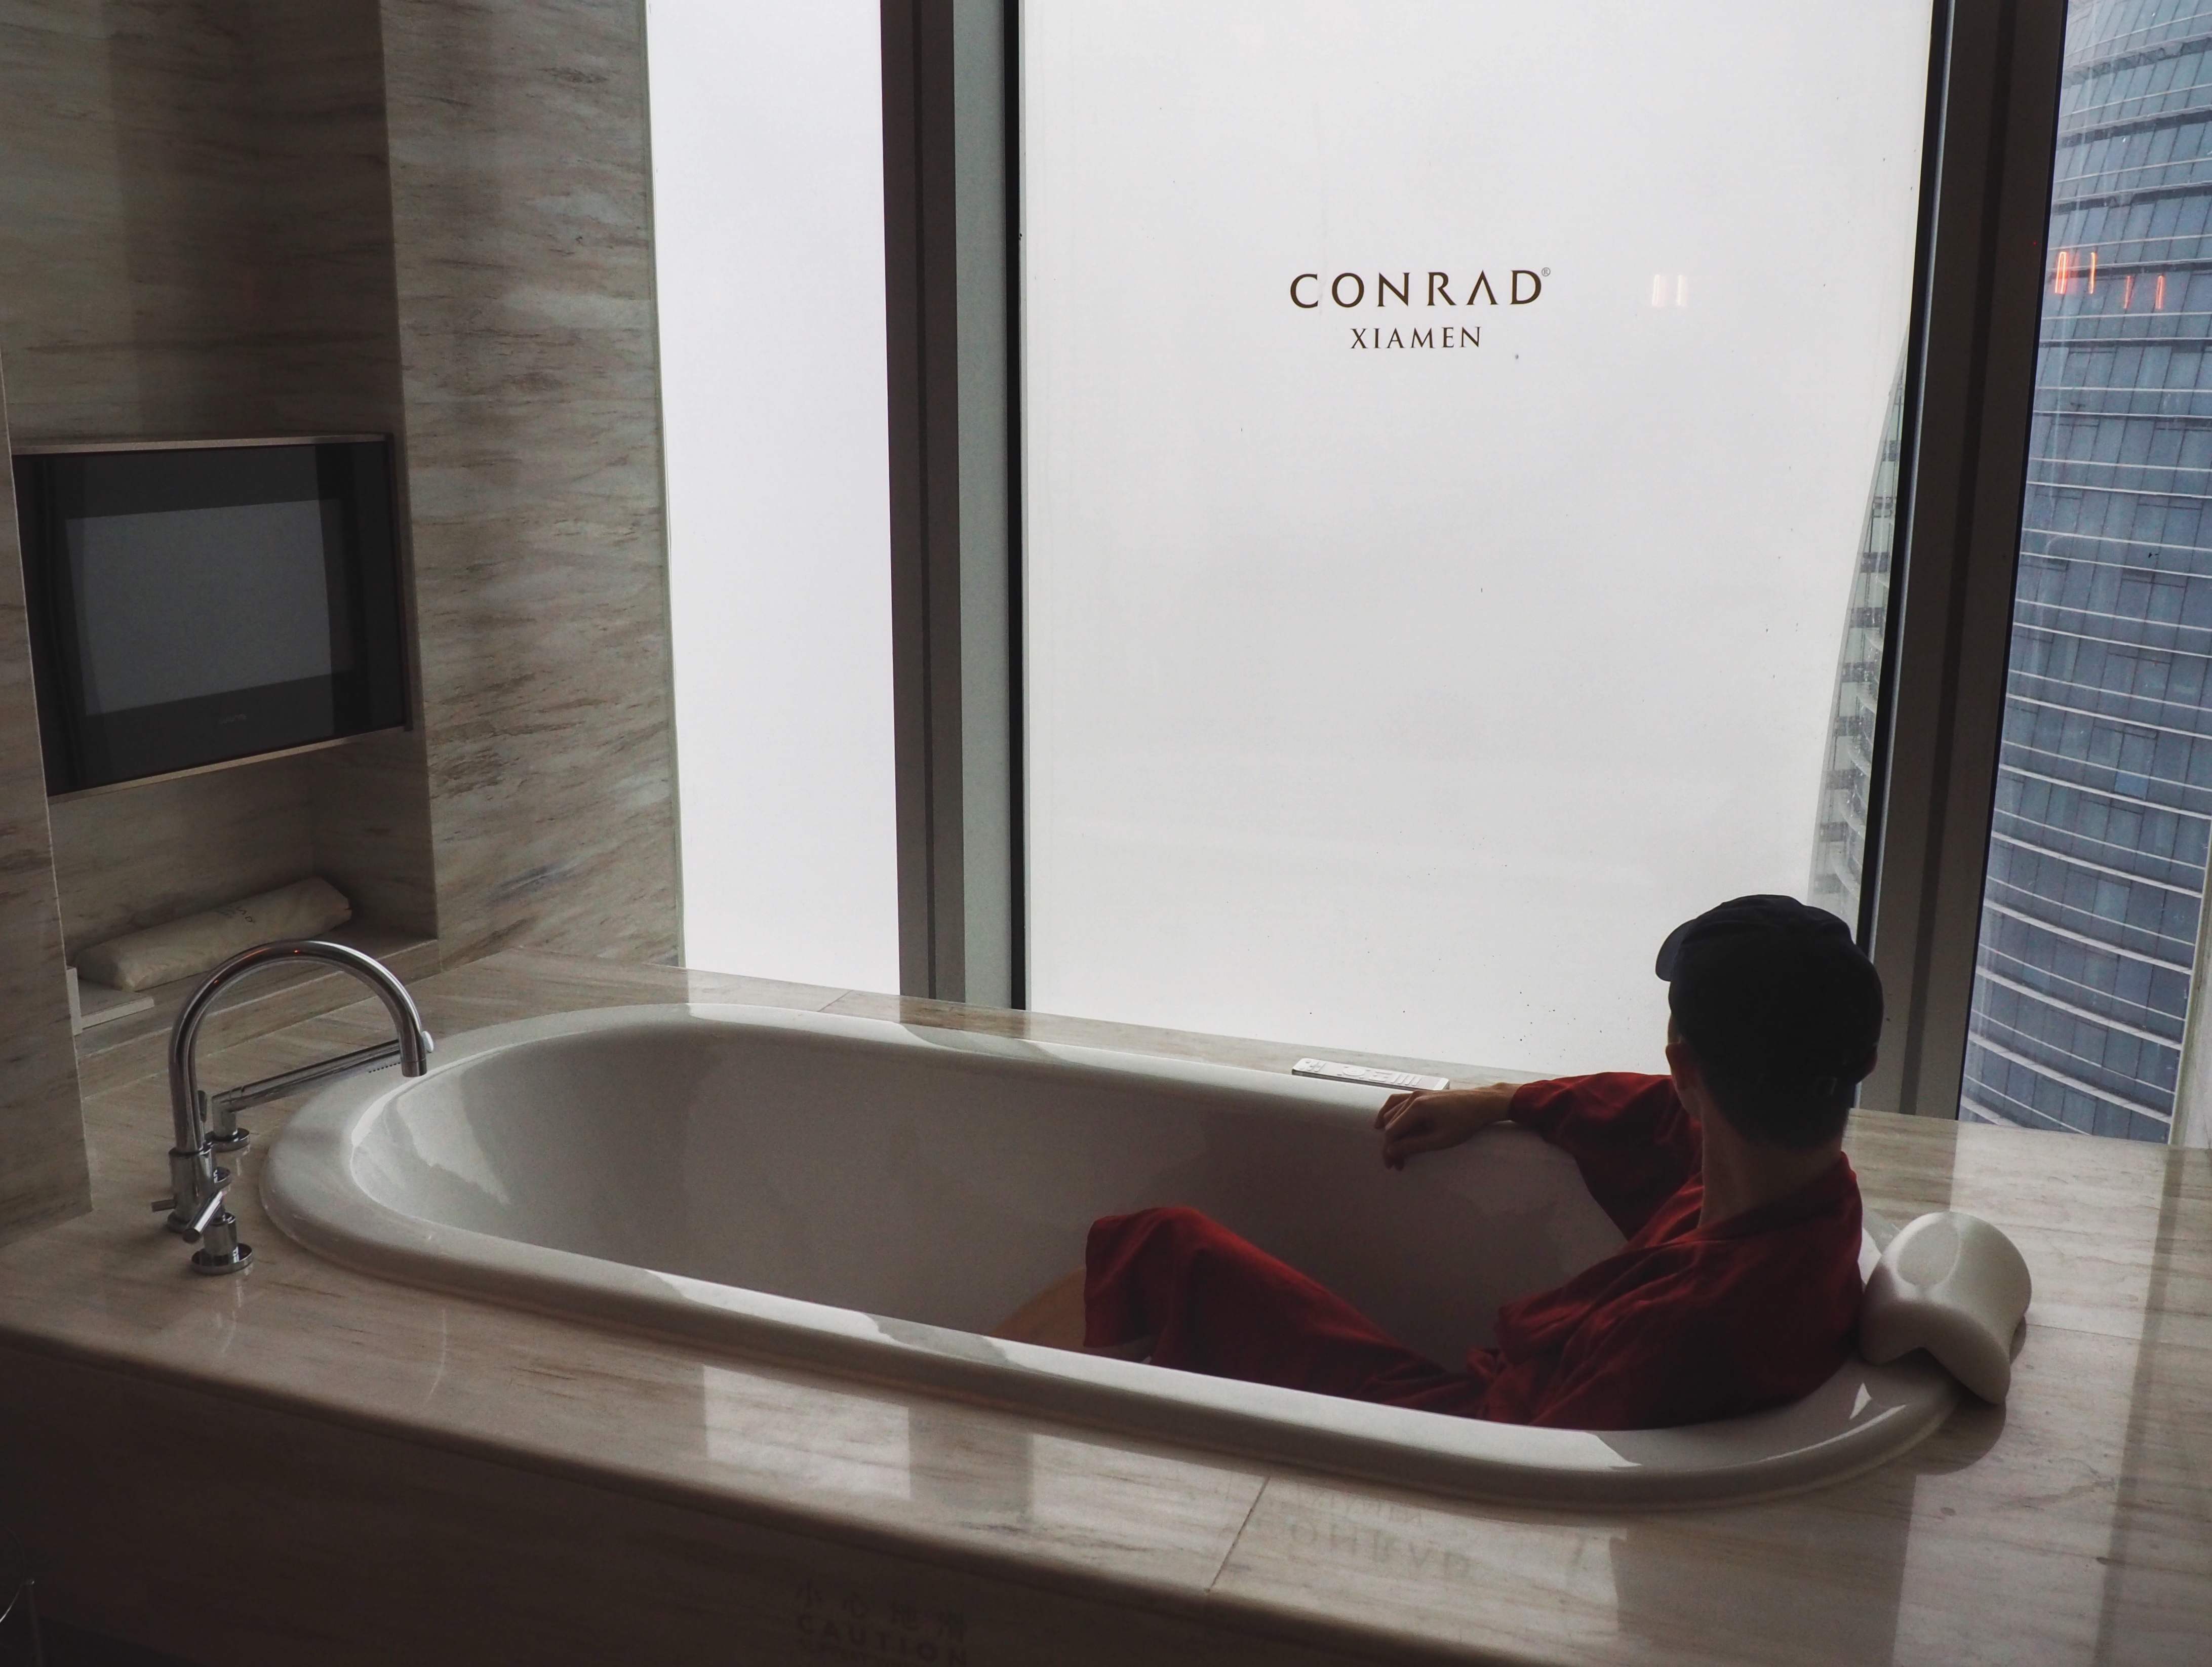 2019ʥڵվſ¾Ƶ꣺ص֮ #Conrad Xiamen